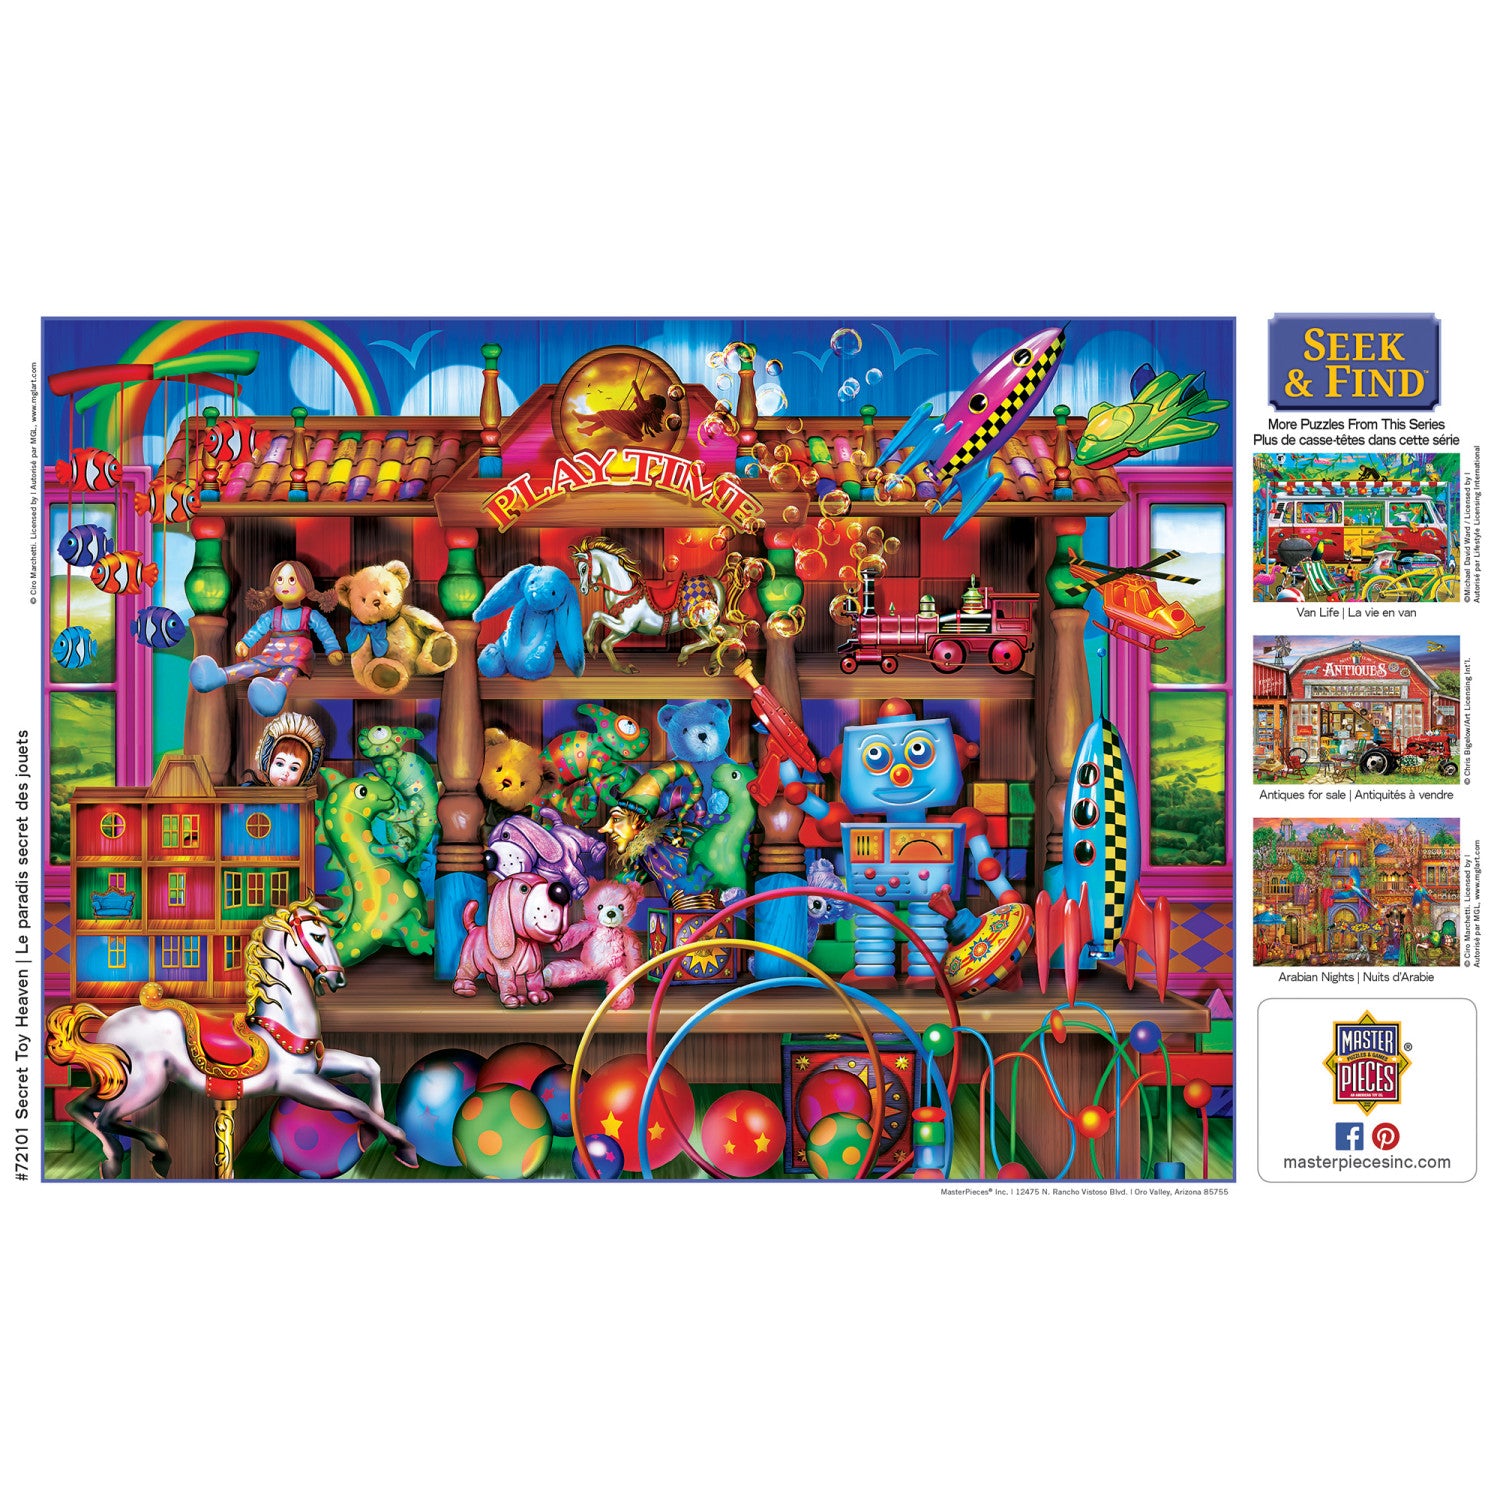 Seek & Find - Secret Toy Heaven 1000 Piece Jigsaw Puzzle